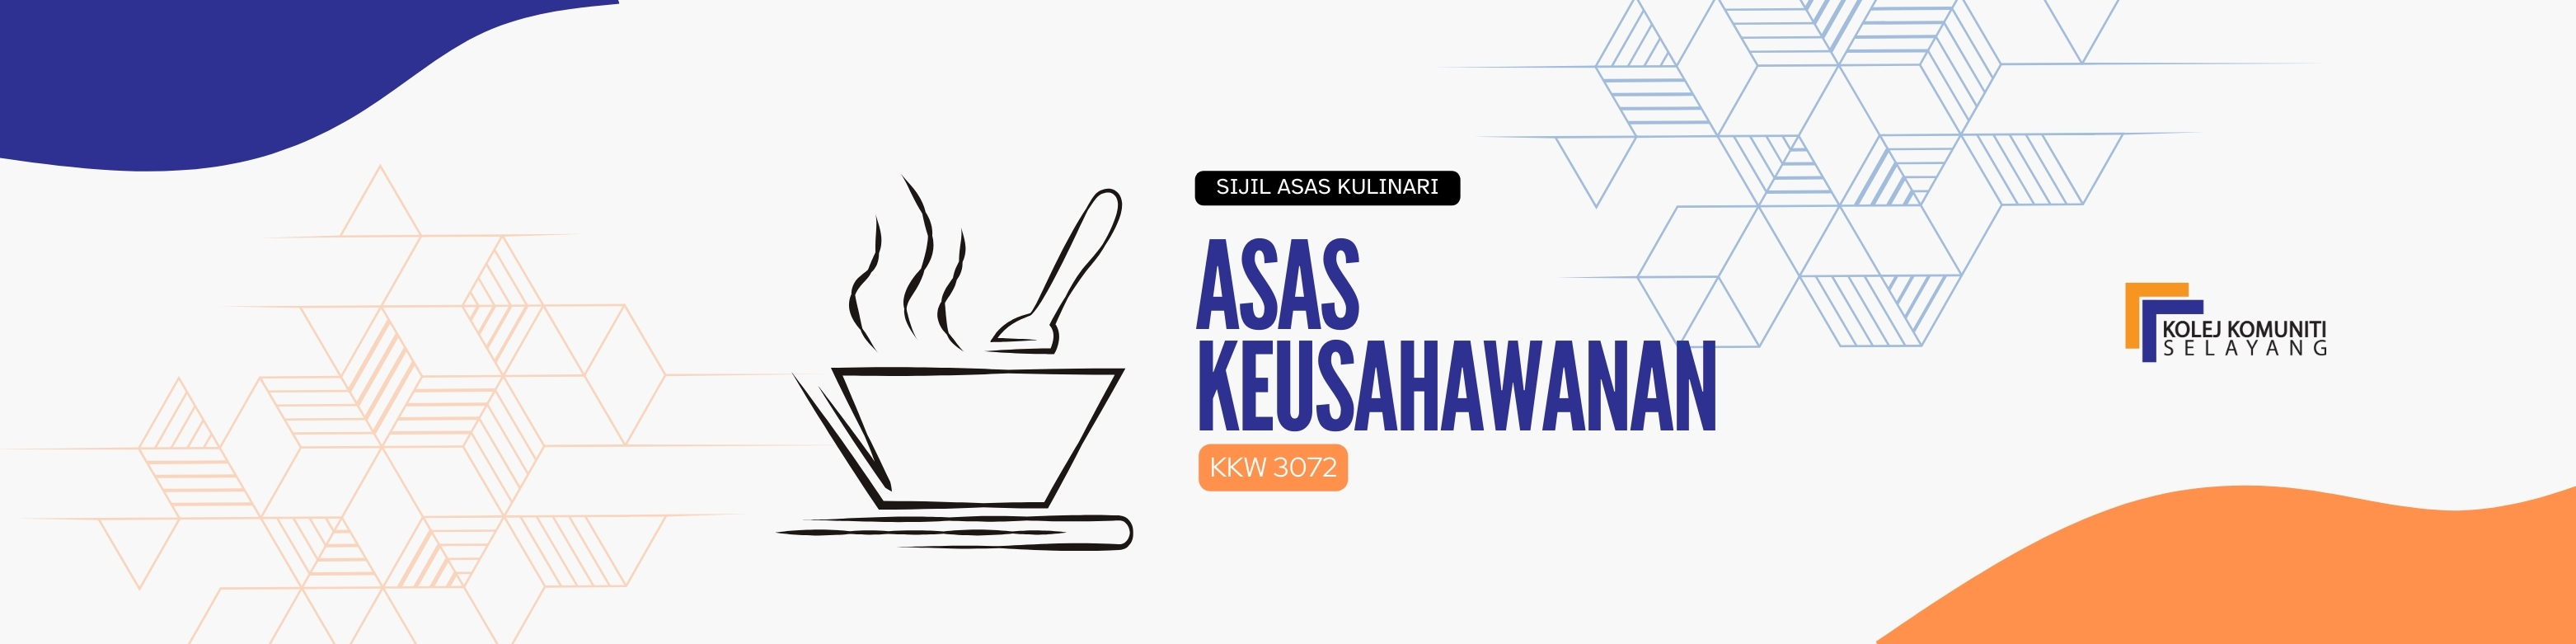 KKW3072 - ASAS KEUSAHAWANAN 